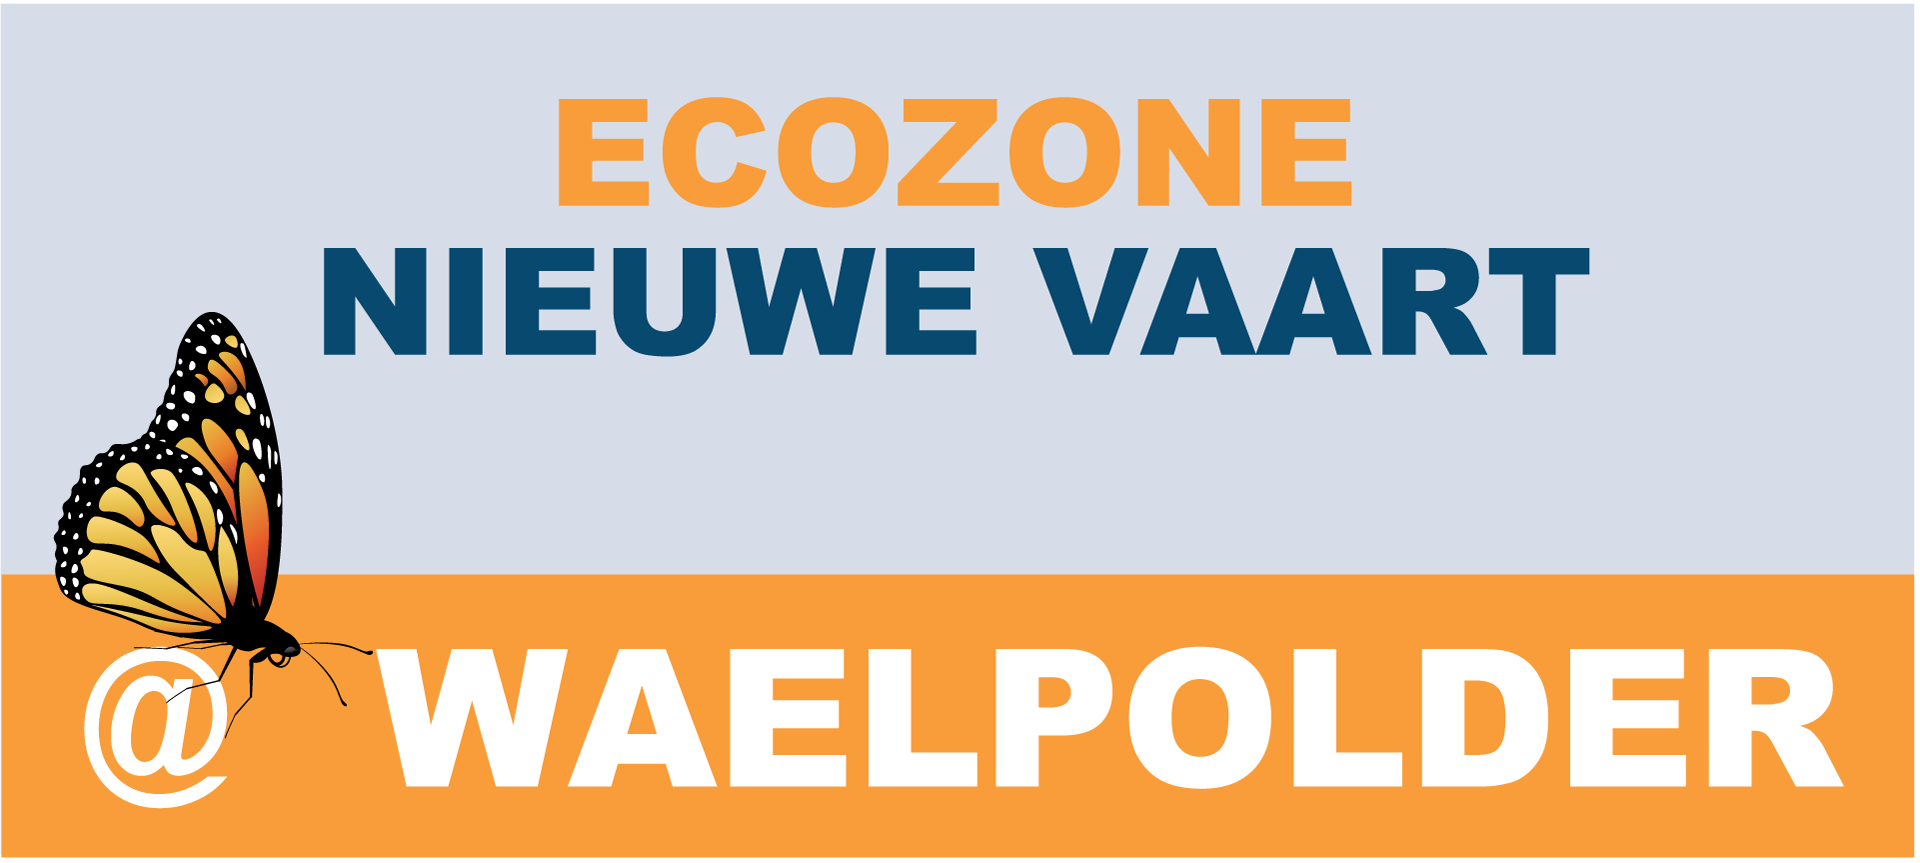 Label-Ecozone-Nieuwe-Vaart-OL[93]